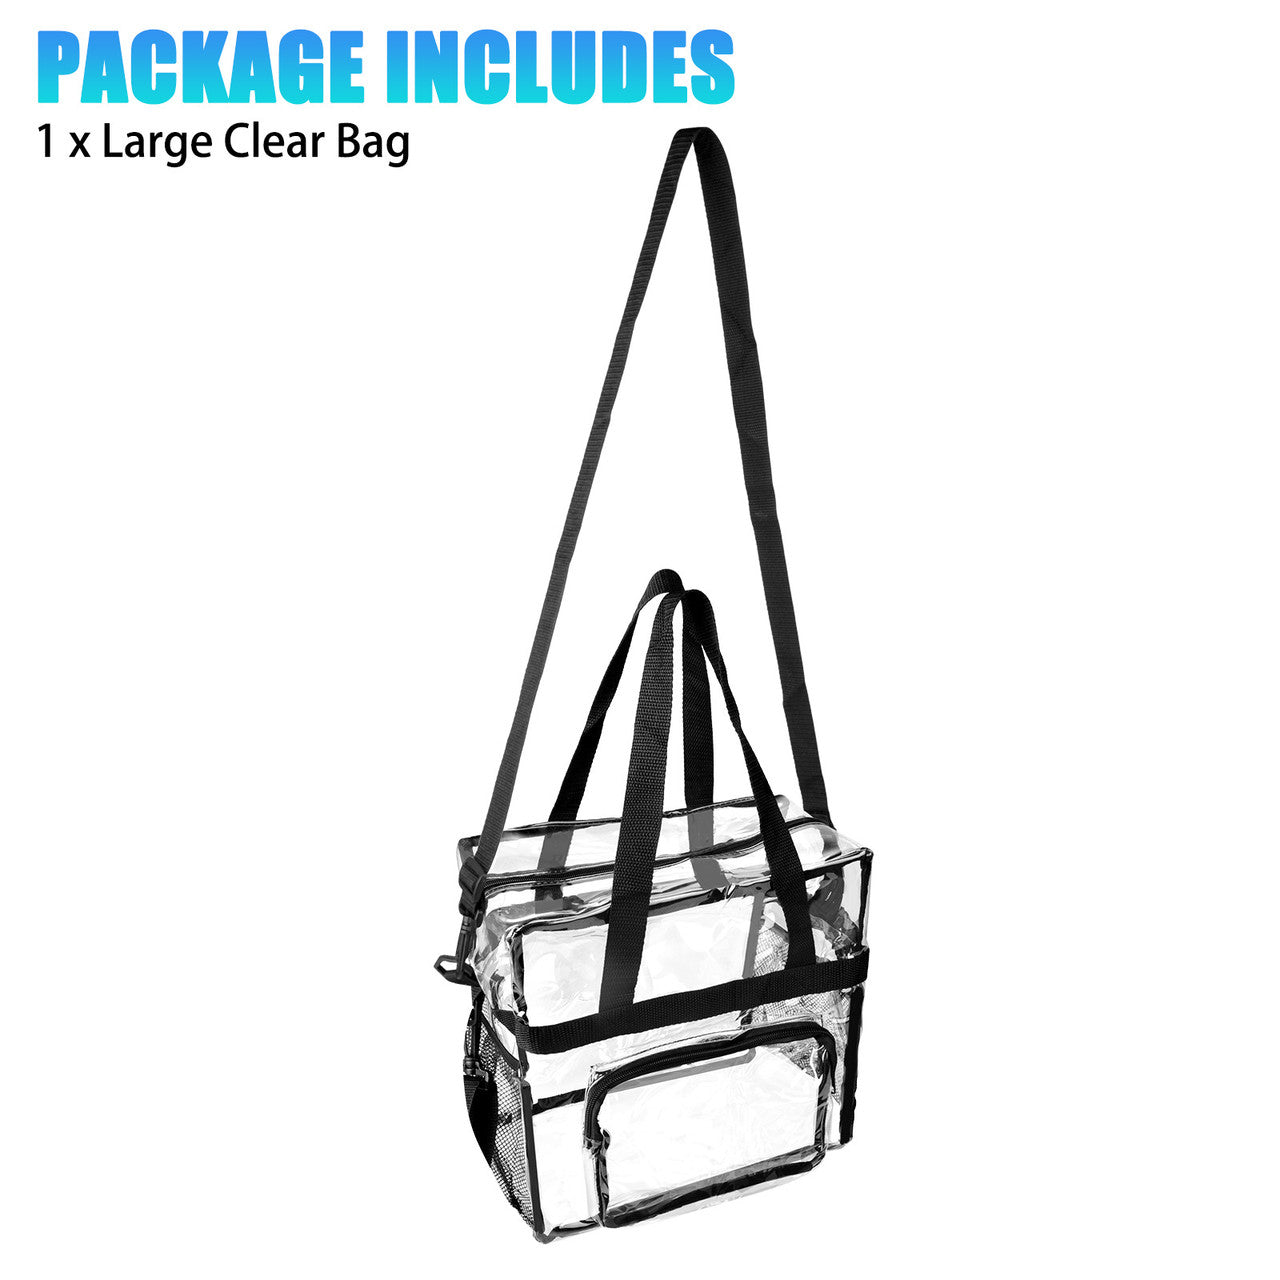 Transparent Zippered Tote Bag, See Through Messenger Shoulder Bag for Work, School, Sports Games